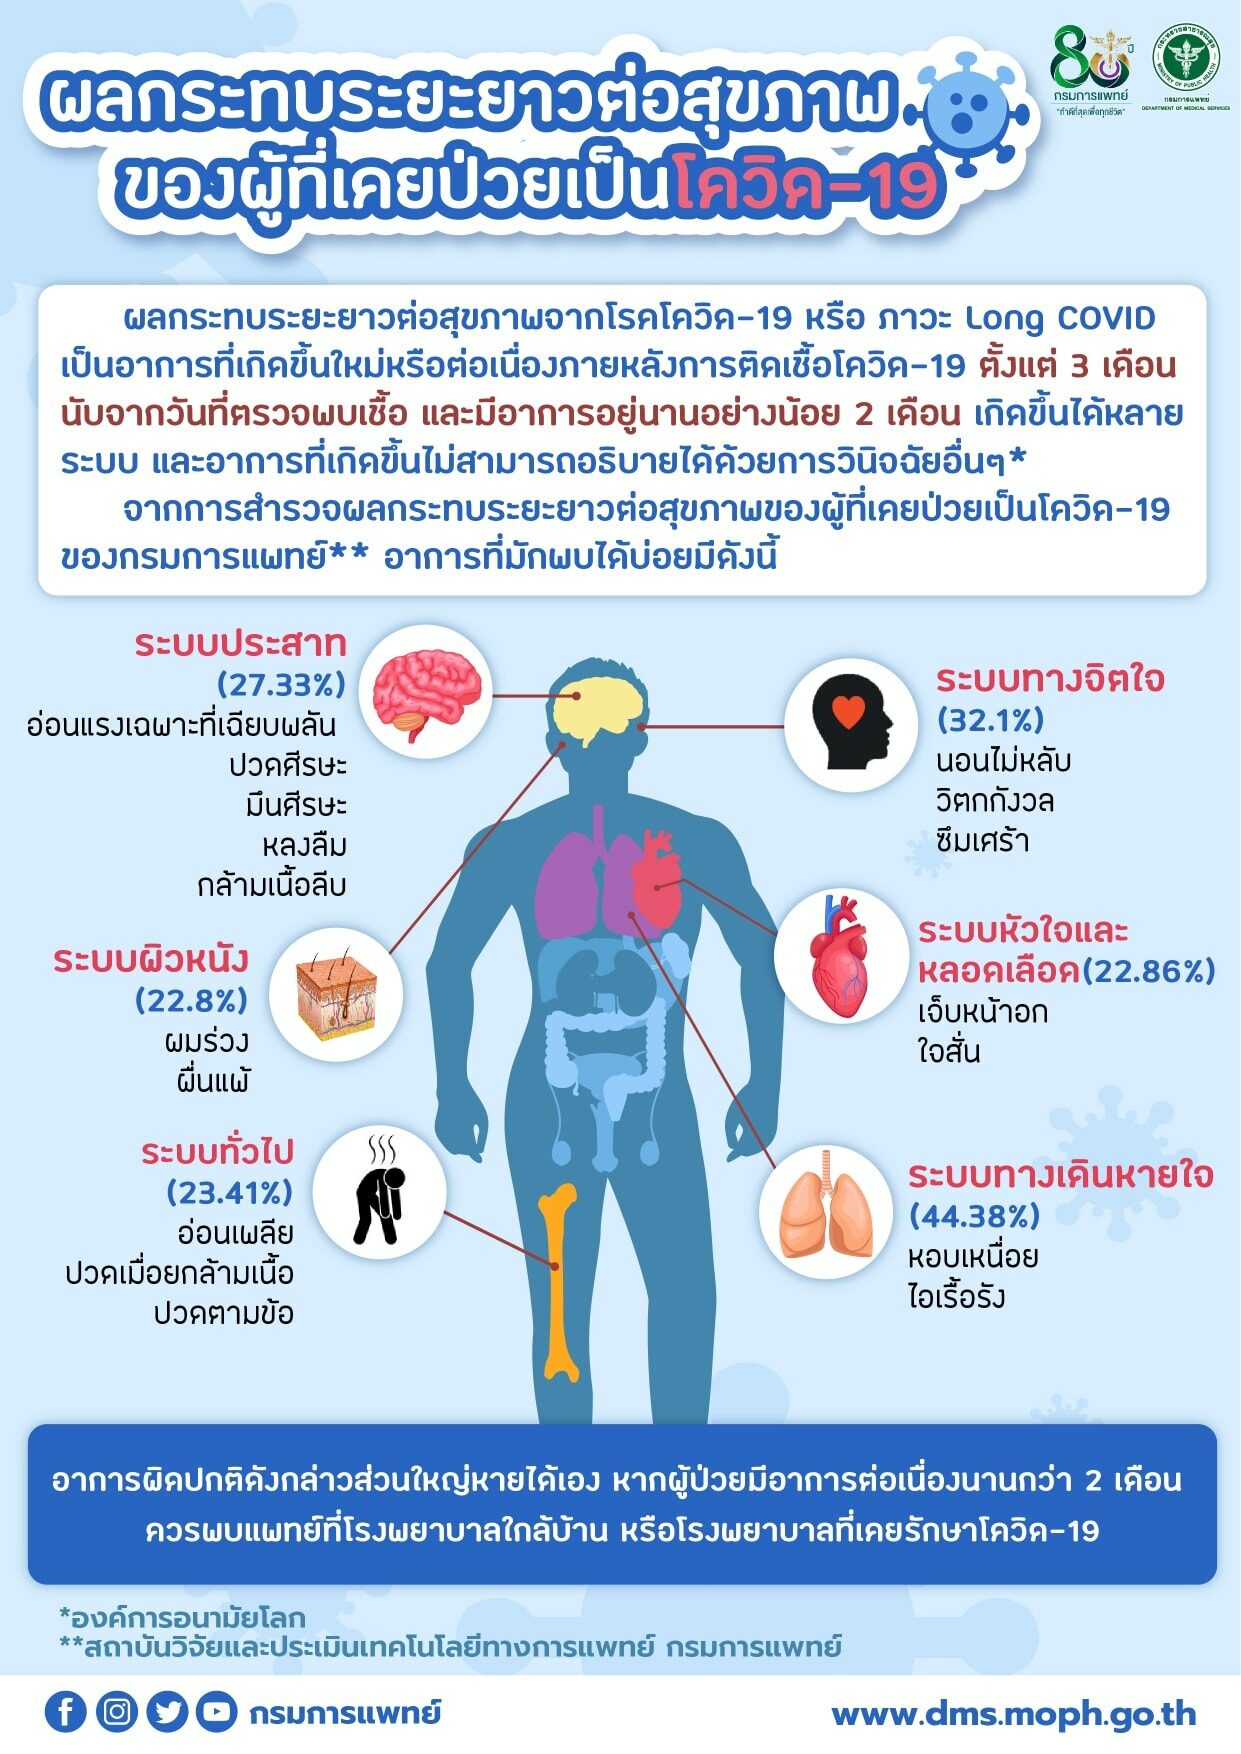 กรมการแพทย์ เผย อาการ Long Covid ในไทย ส่วนใหญ่มีอาการไอเรื้อรัง -  หอบเหนื่อย